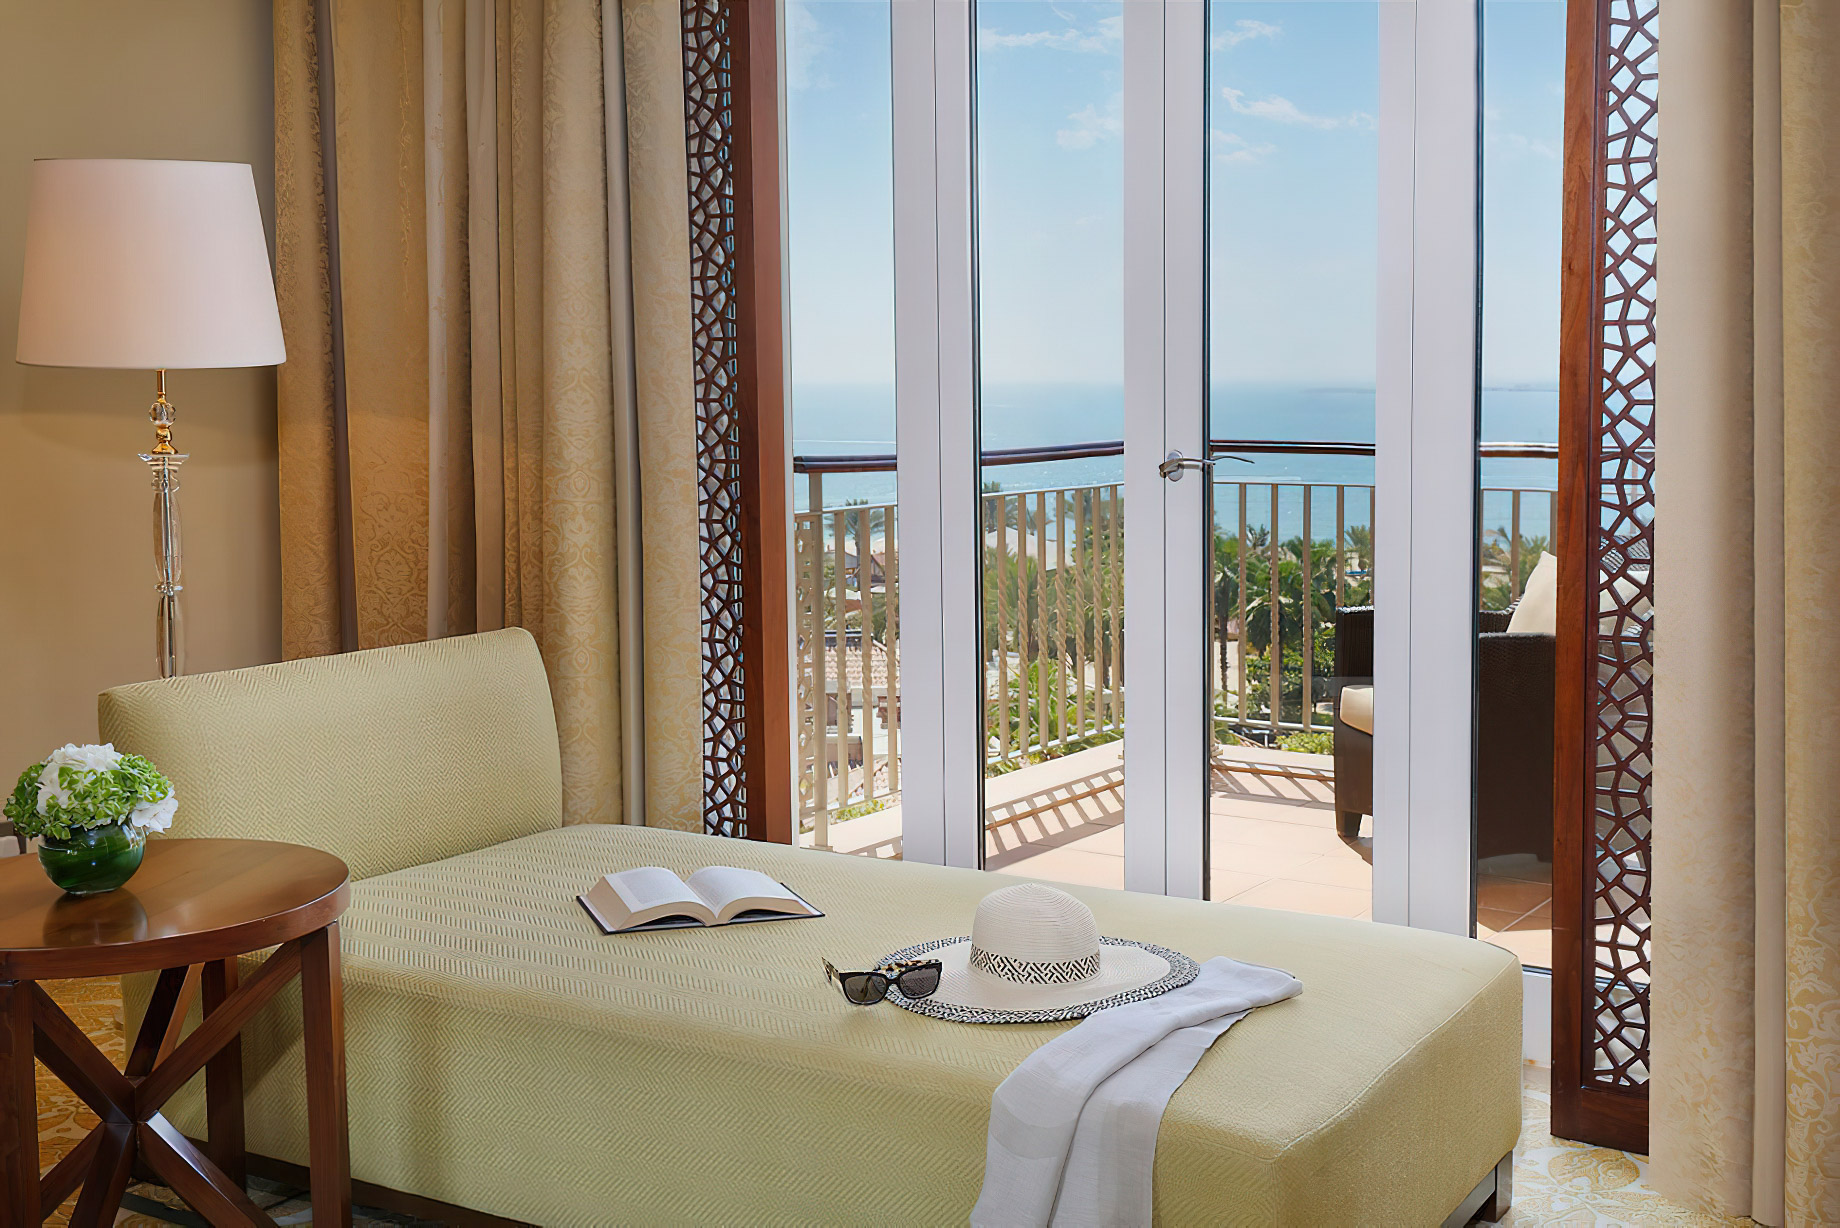 The Ritz-Carlton, Dubai Hotel – JBR Beach, Dubai, UAE – One Bedroom Ocean Club Suite View